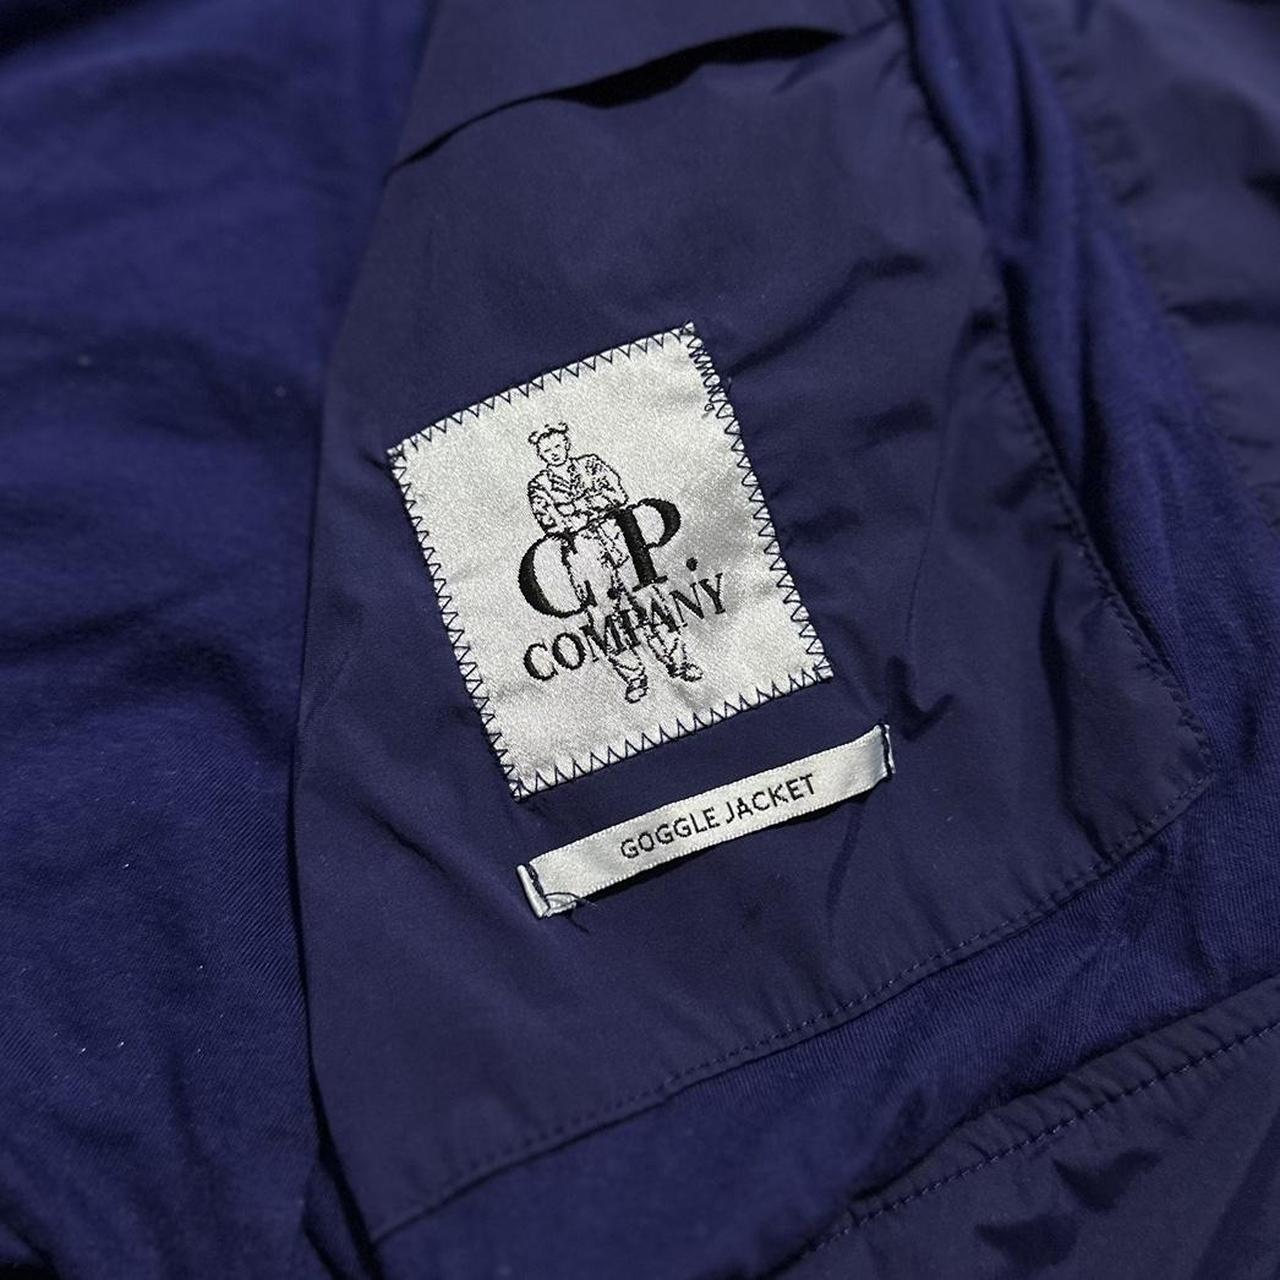 CP Company Adidas Goggle Jacket